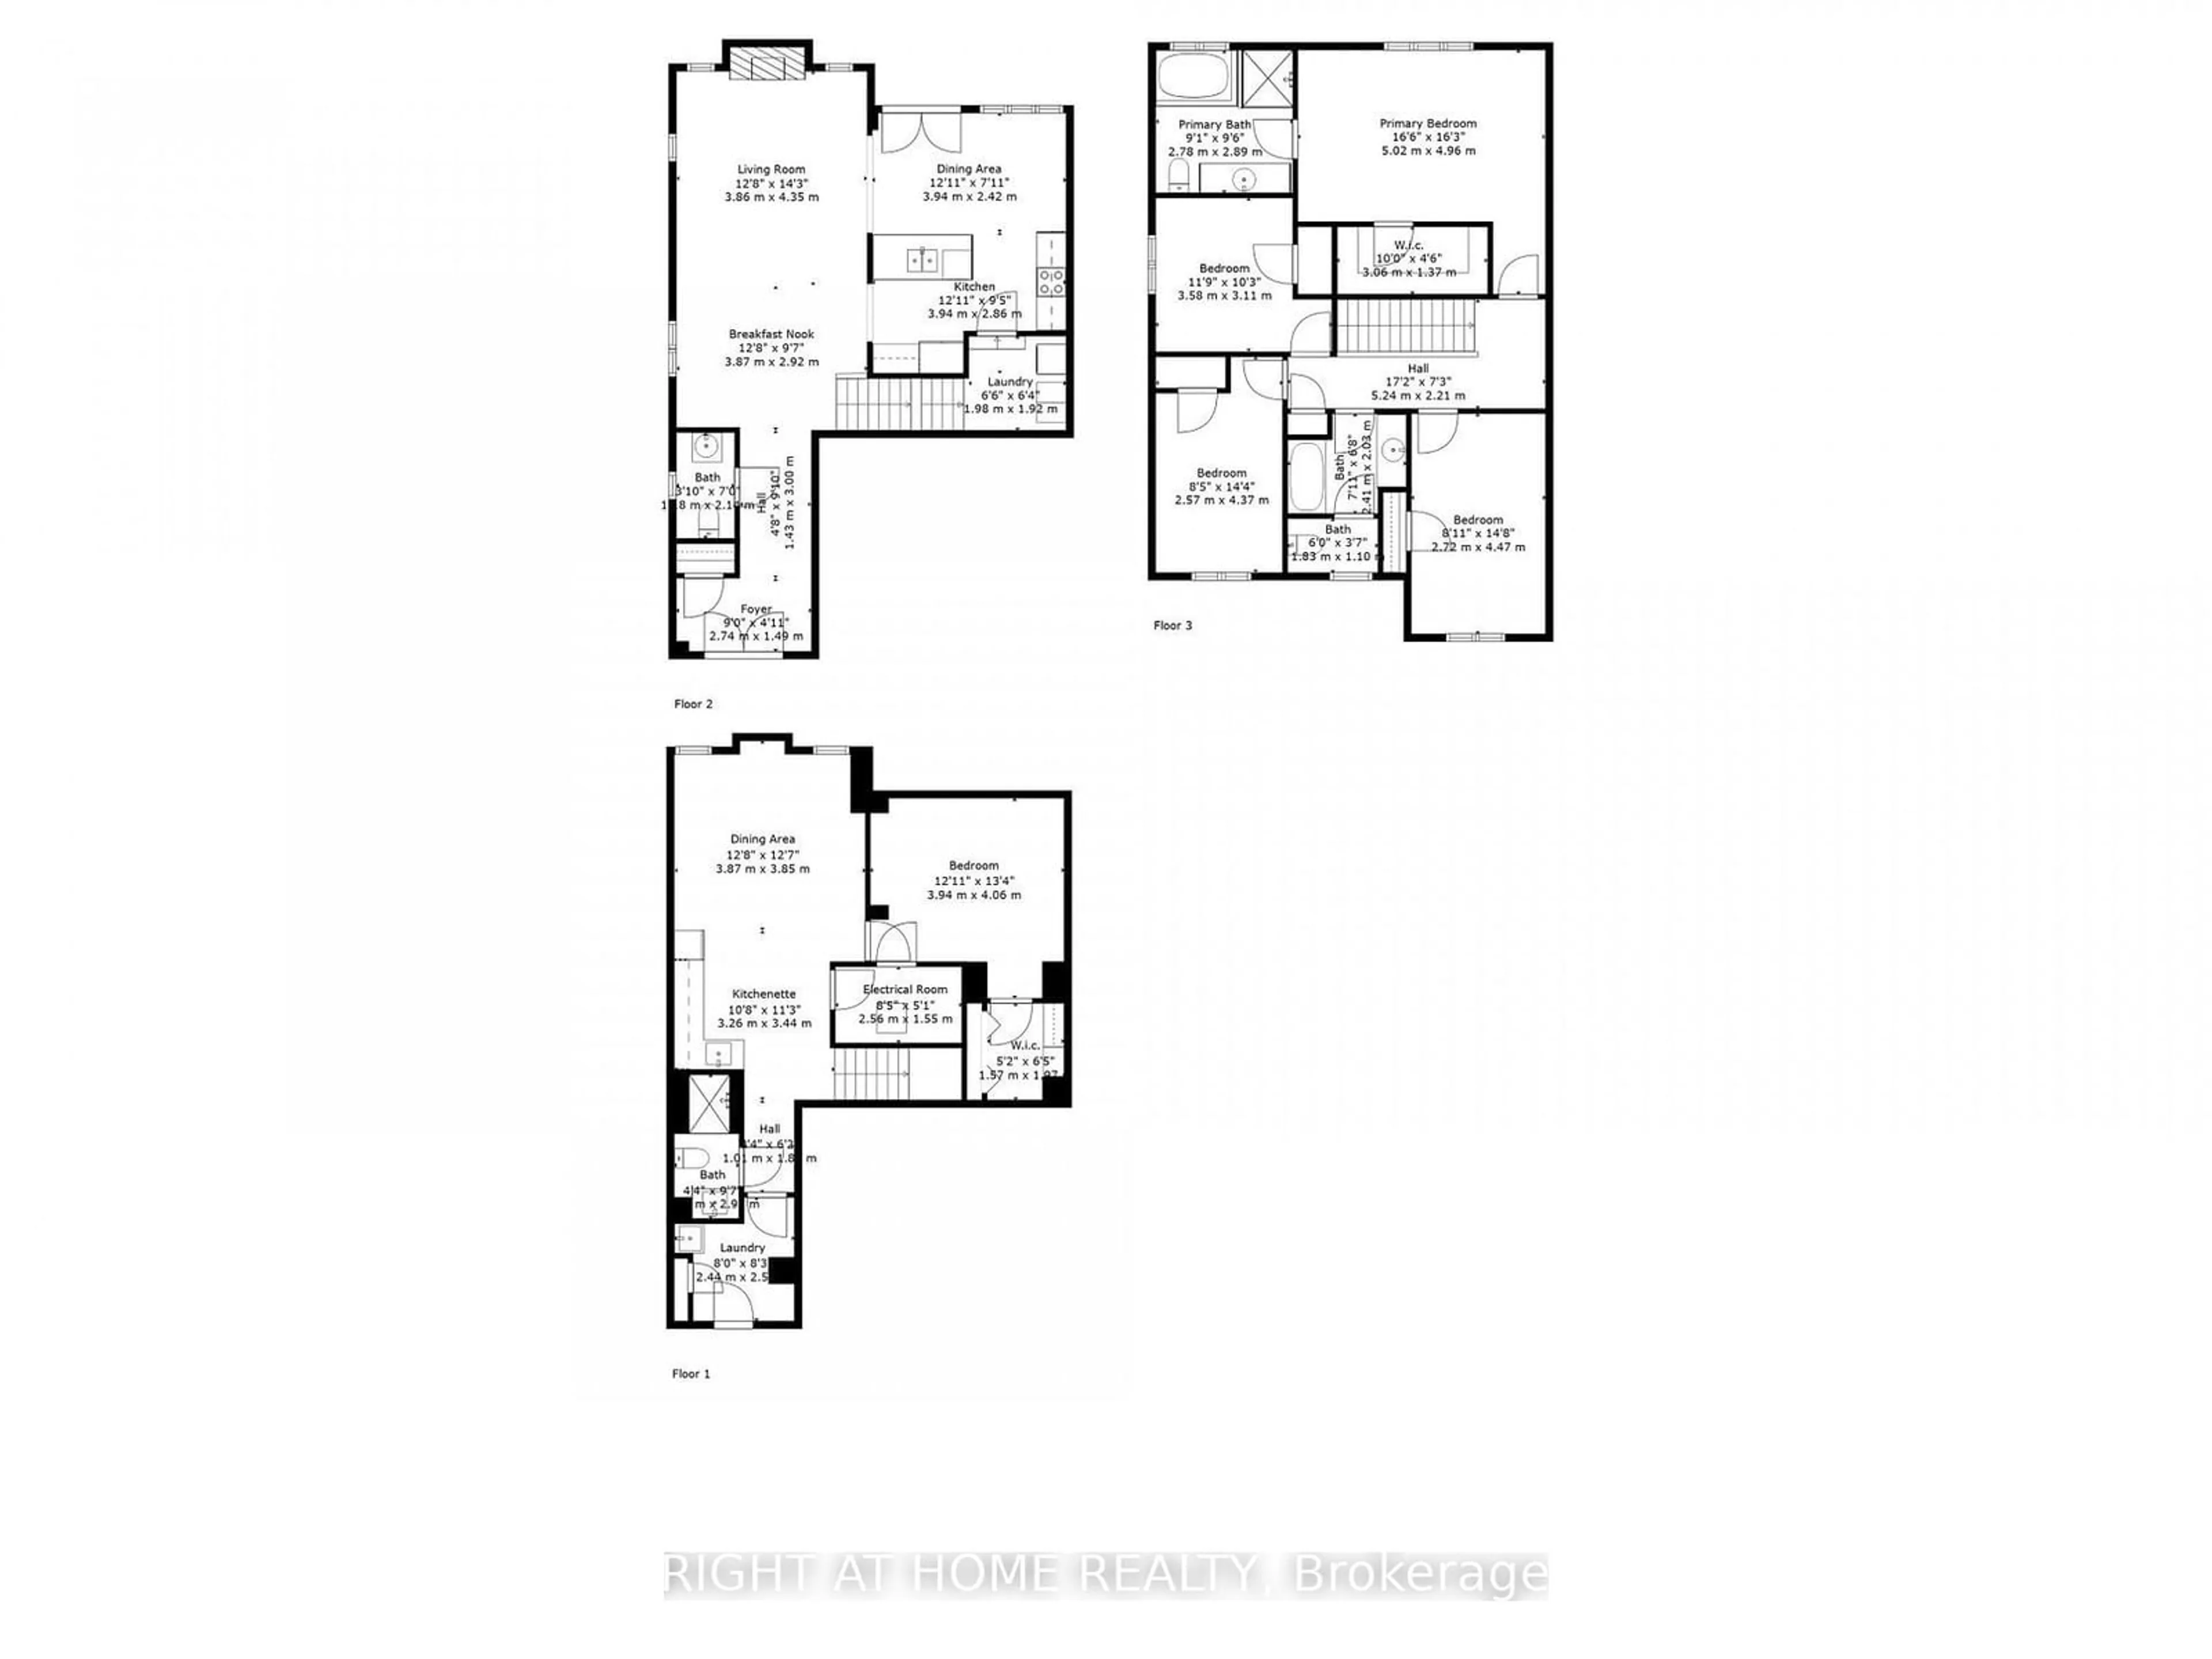 Floor plan for 9 Cedarsprings Way, Brampton Ontario L6R 0W1